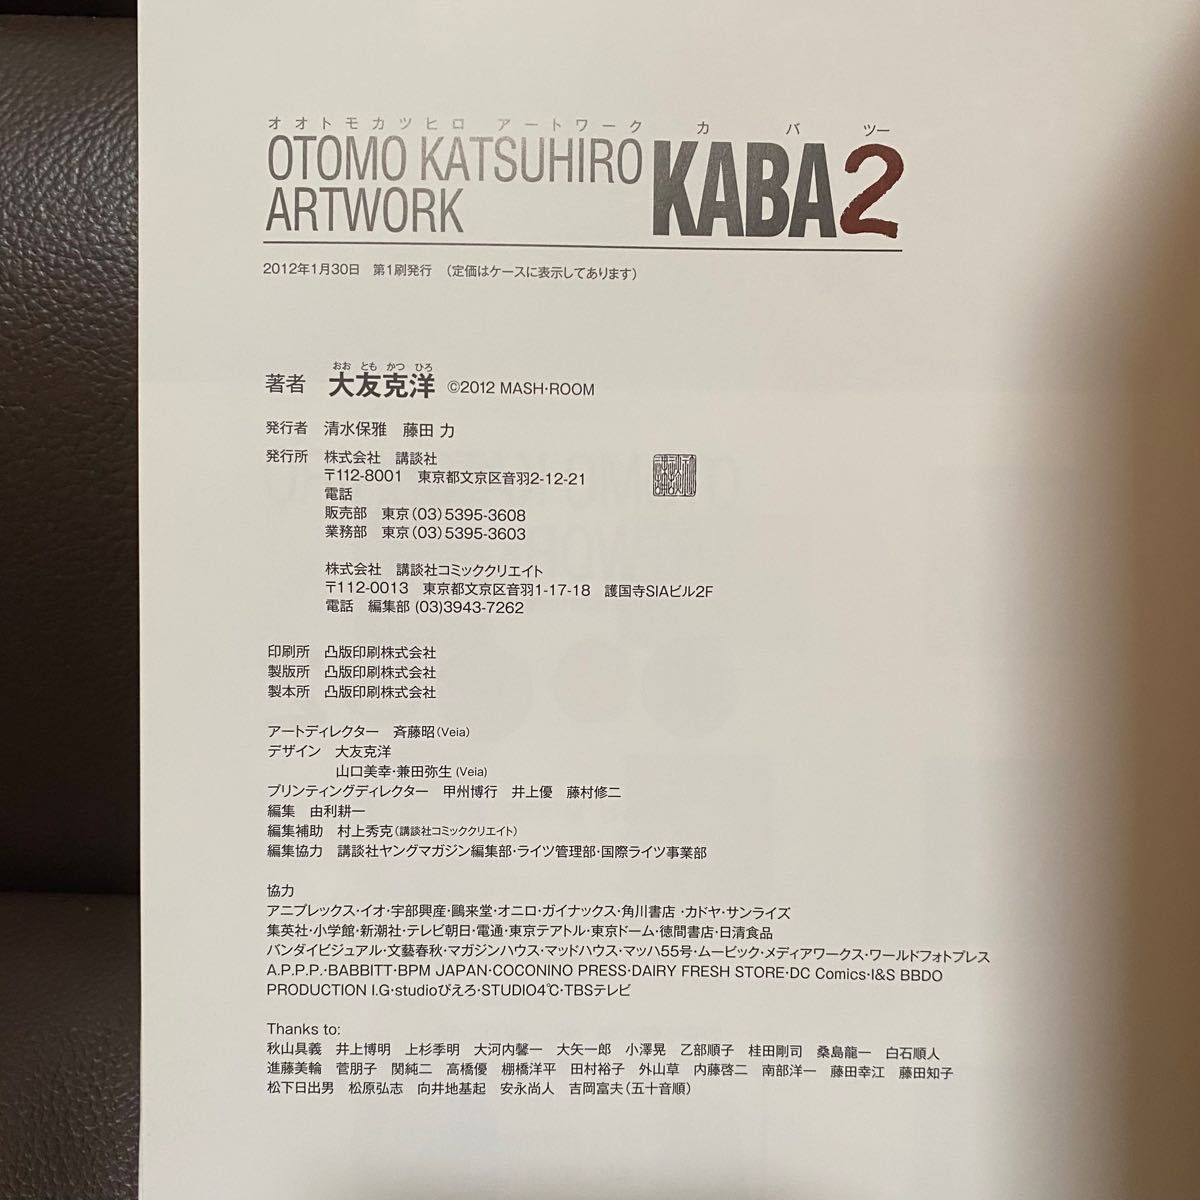 大友克洋 KABA2 OTOMO KATSUHIRO ARTWORK 画集 AKIRA 講談社 アート